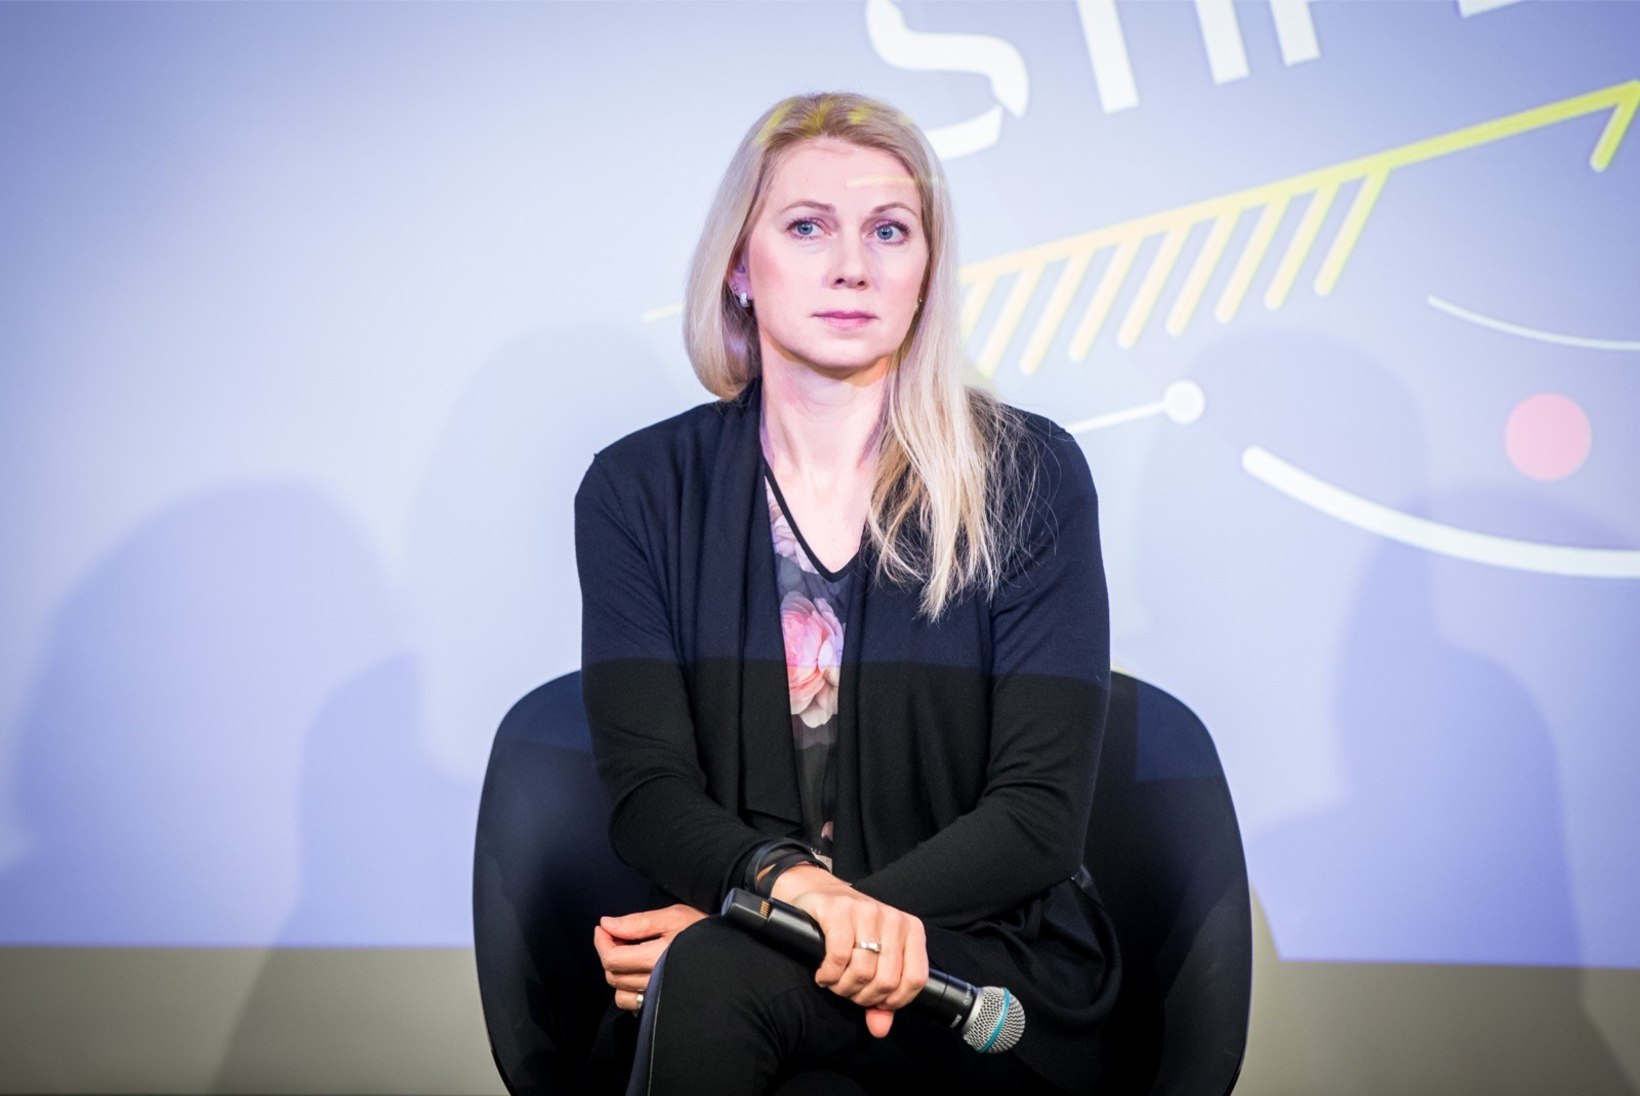 KUULSUSTE MOTIVATSIOONIMINUT | Kristina Šmigun-Vähi: mind paneb elus liikuma eesmärk